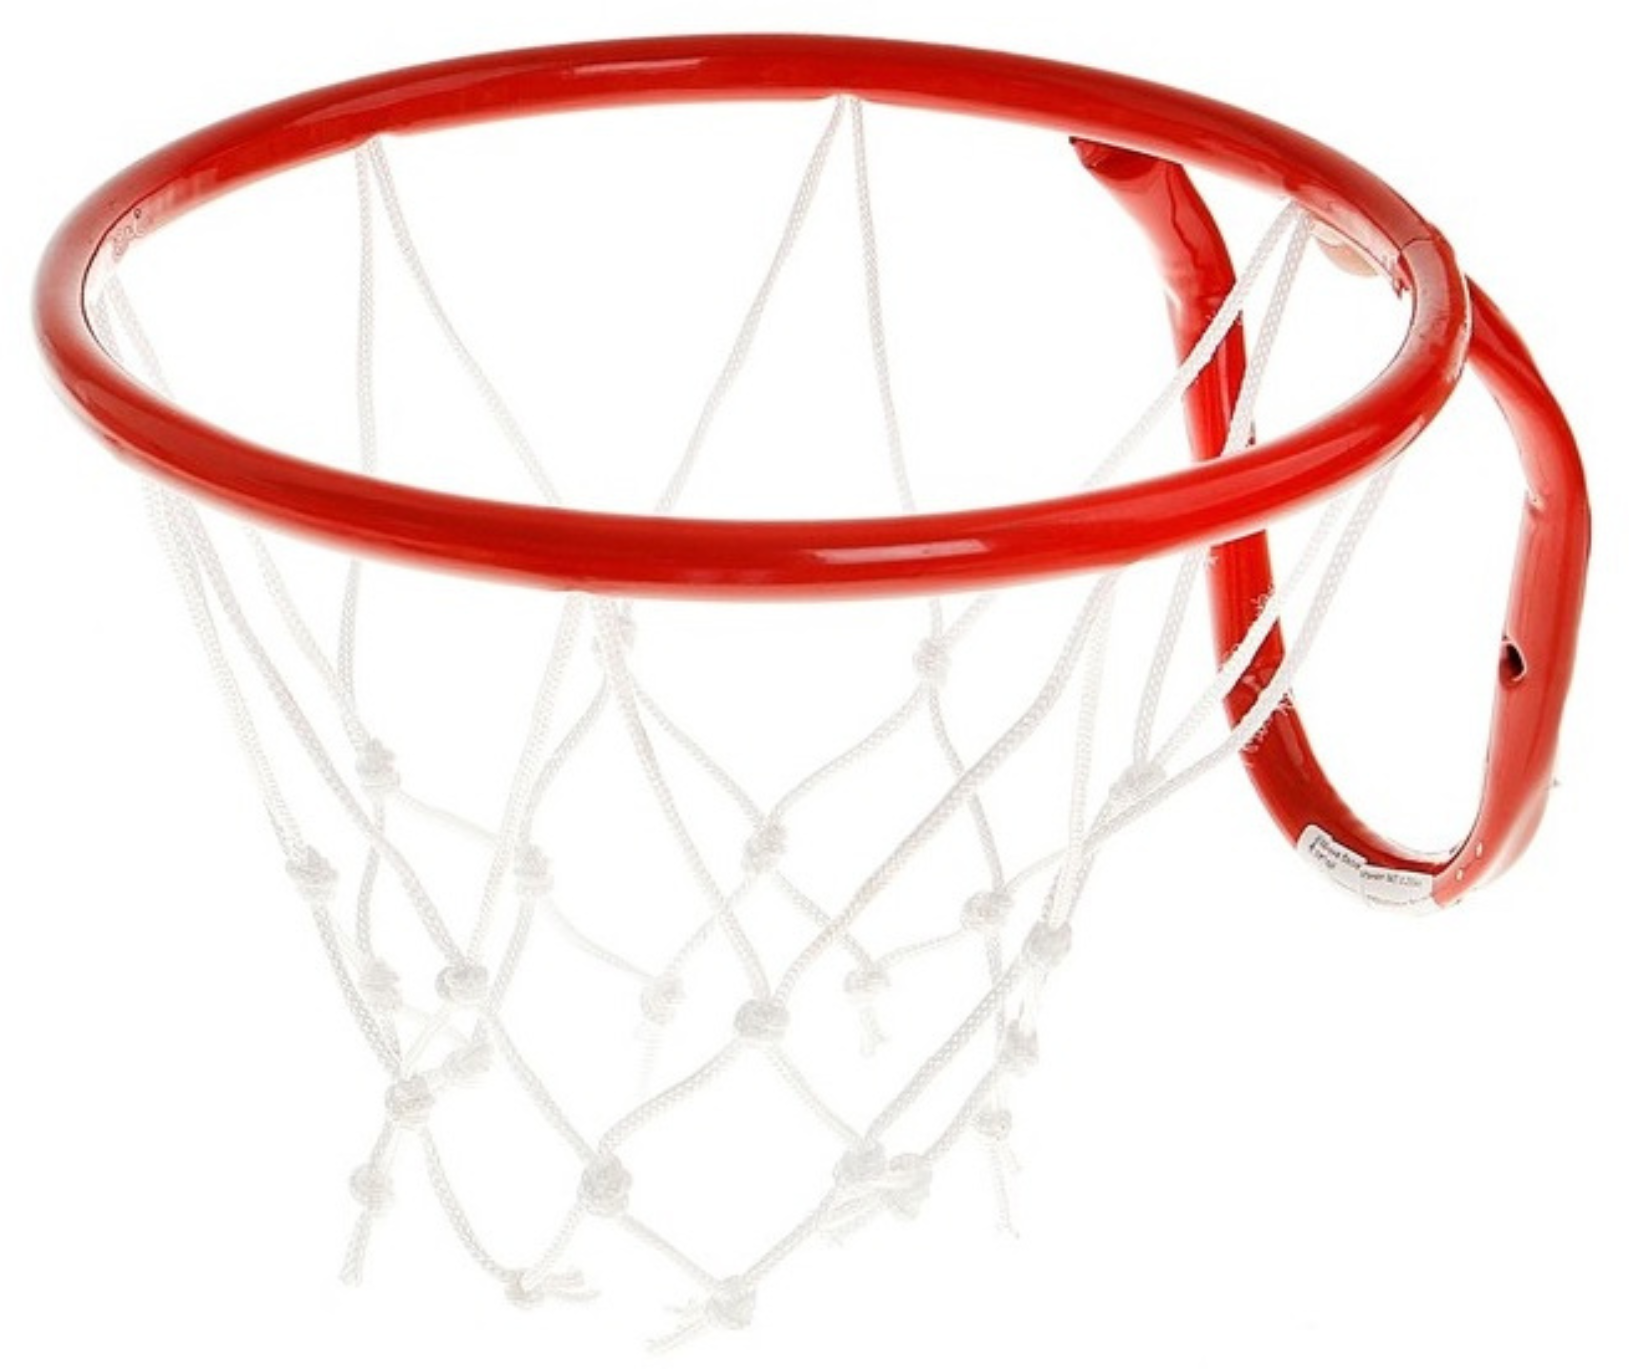 Корзина баскетбольная, баскетбольное кольцо, металлическое, с сеткой, диаметр 38 см.